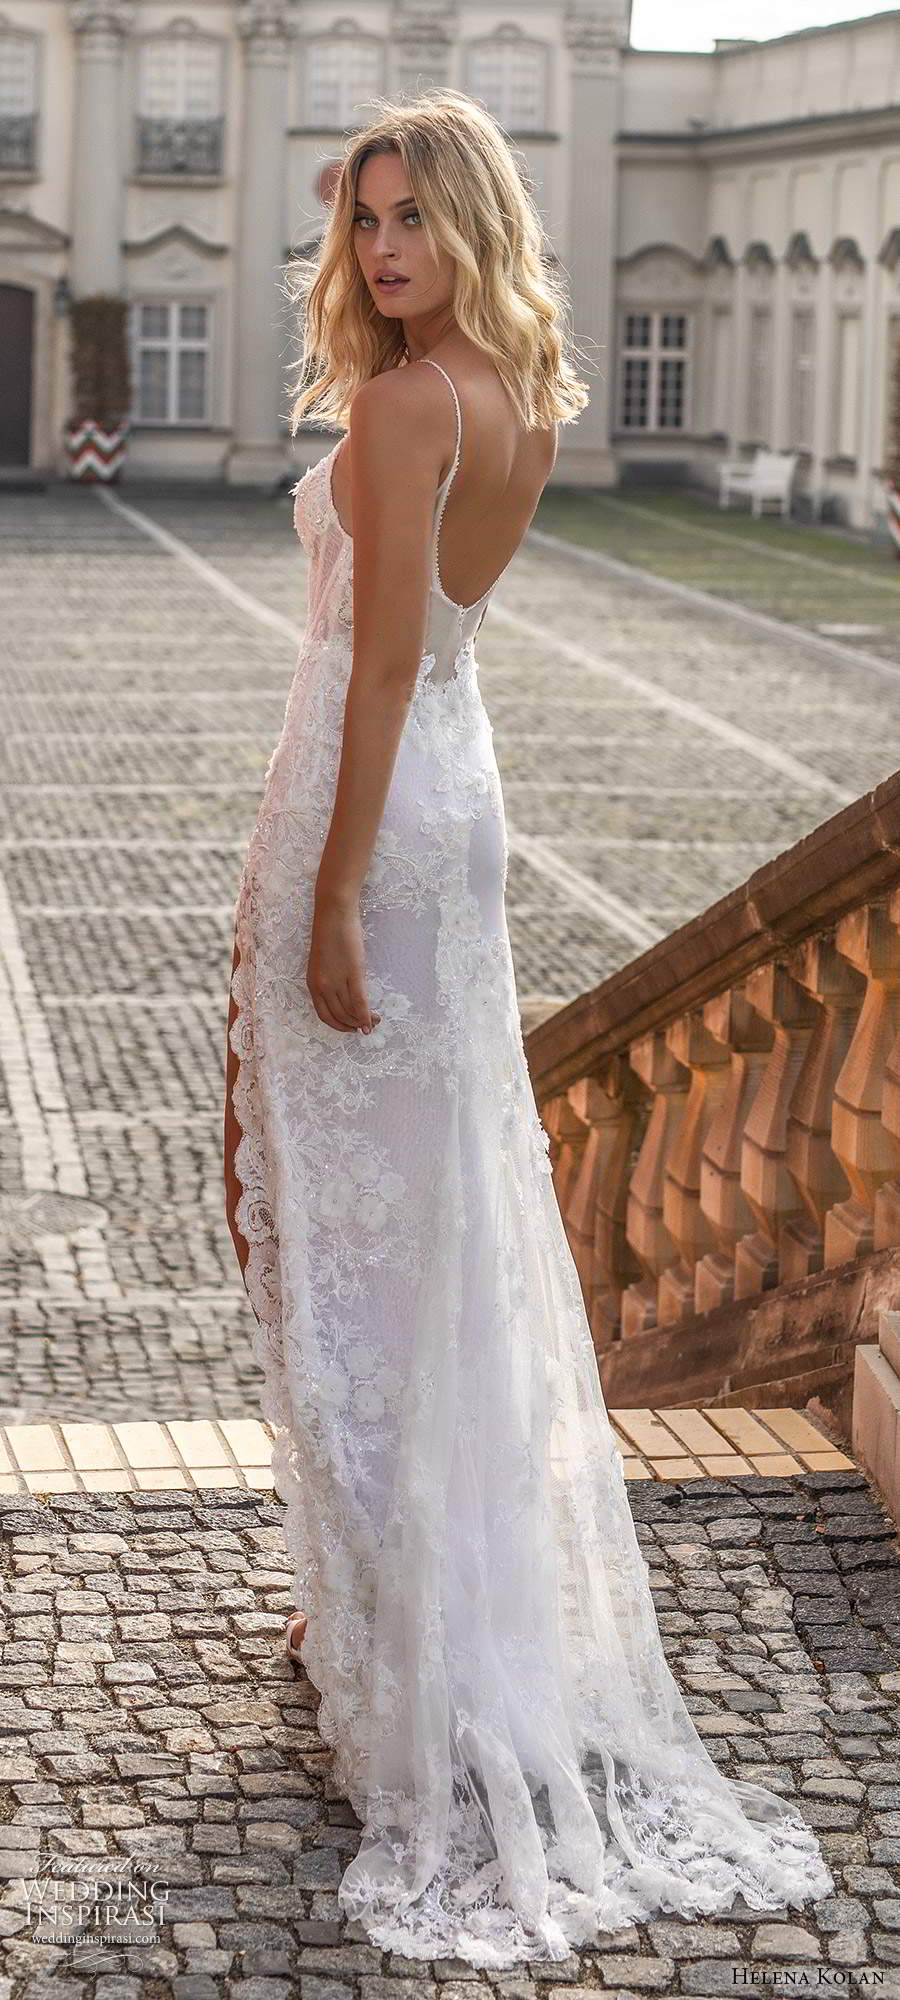 helena kolan 2020 bridal sleeveless thin straps sweetheart neckline fully embellished lace sheath wedding dress slit skirt low sheer back sweep train (11) bv